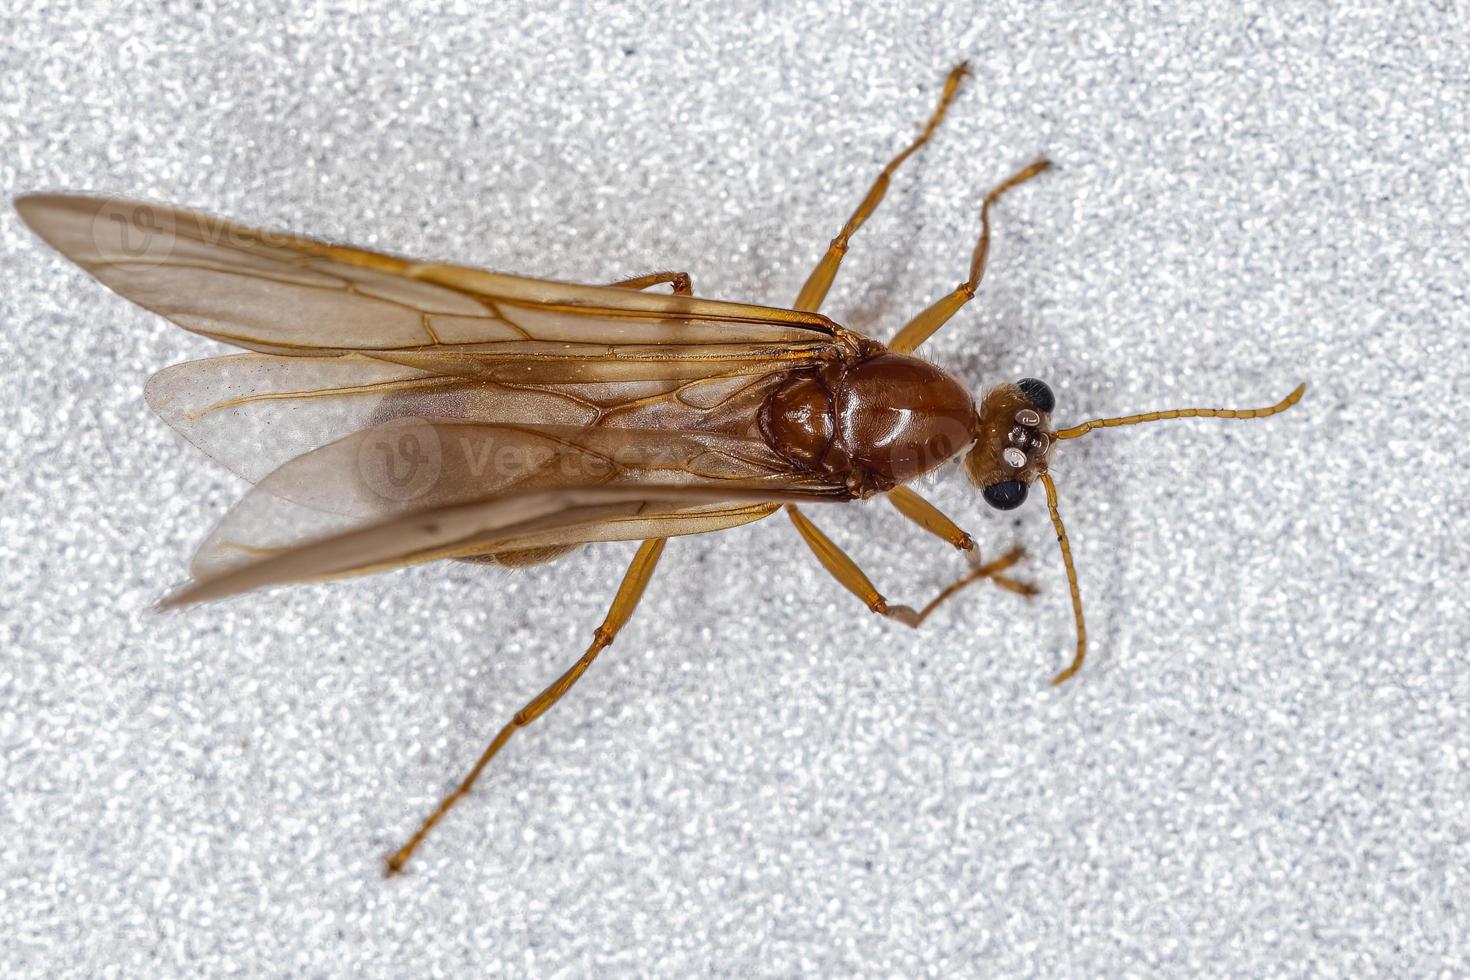 männliche erwachsene Myrmicine Ameise foto